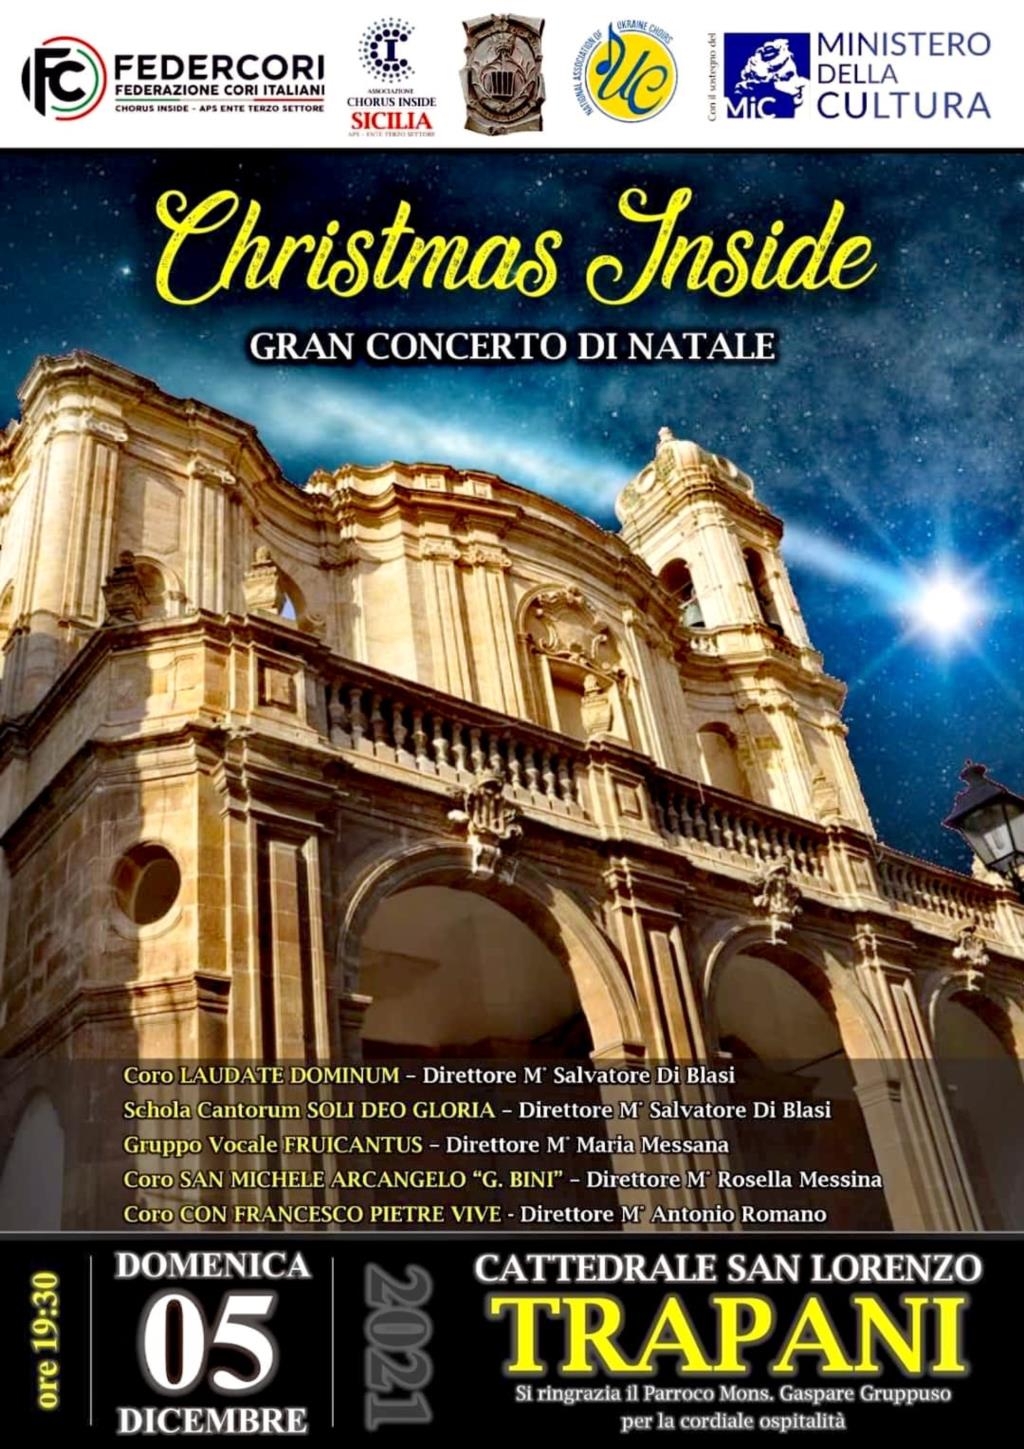 Gran concerto di Natale in Cattedrale a Trapani